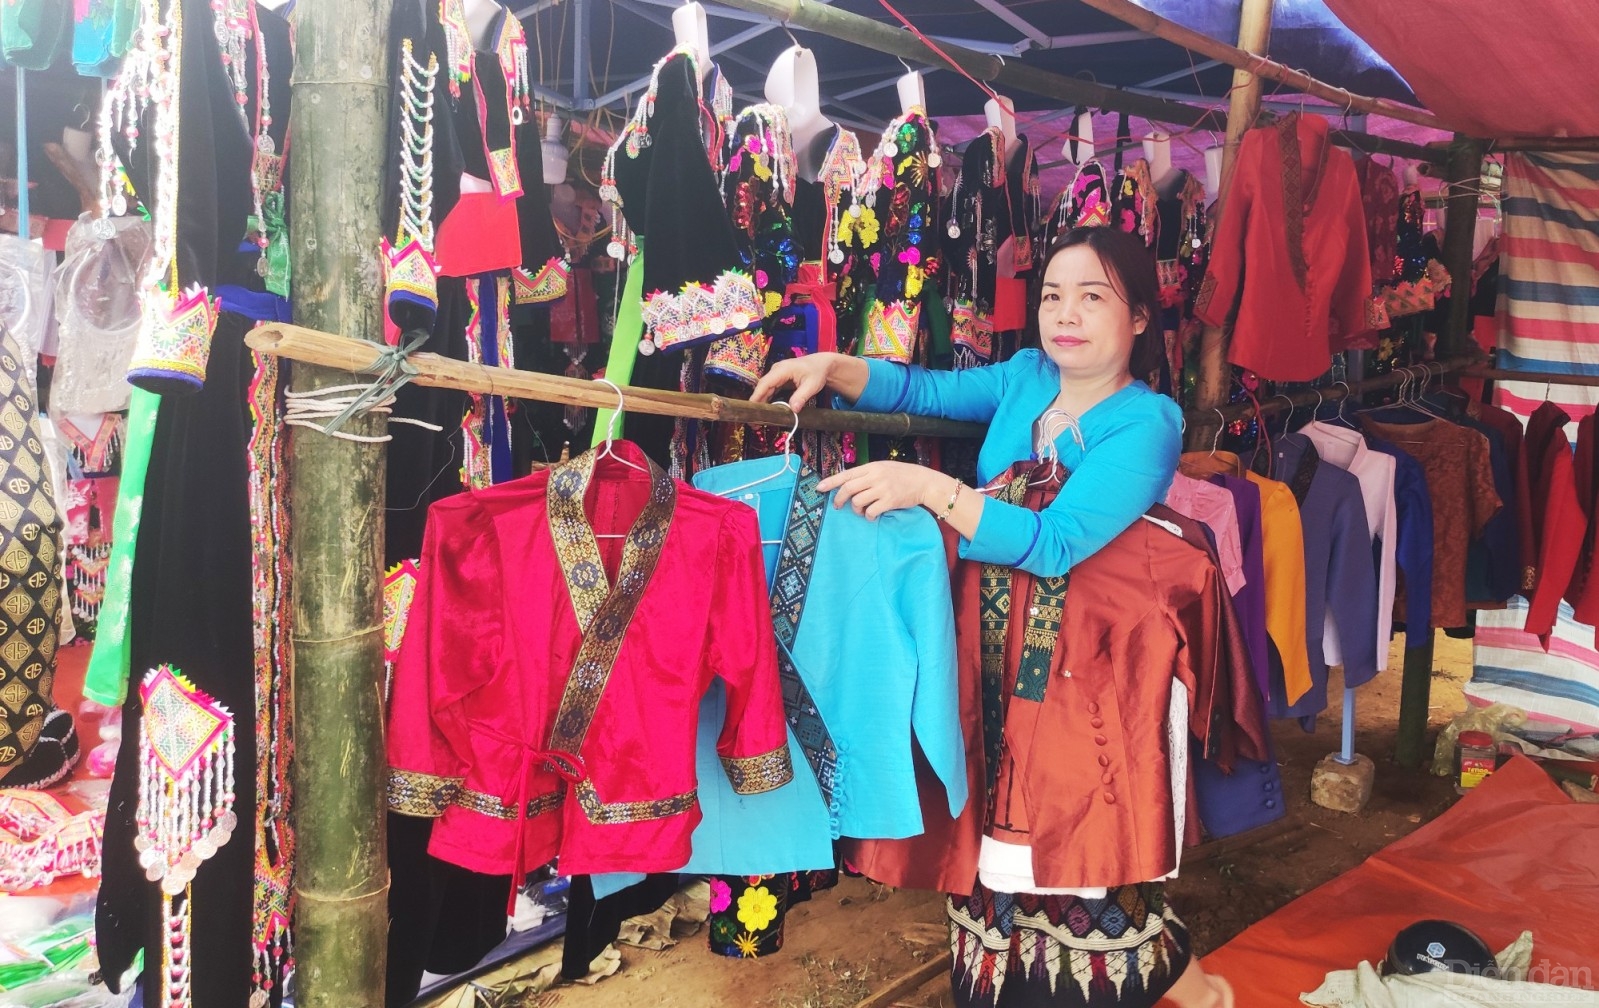 Phiên chợ vùng cao không chỉ là nơi bày bán của đồng bào các dân tộc thiểu số mà còn là nơi để người dân nước bạn Lào giới thiệu, trưng bày những bộ trang phục đẹp mắt mang đậm dấu ấn đặc trưng của dân tộc